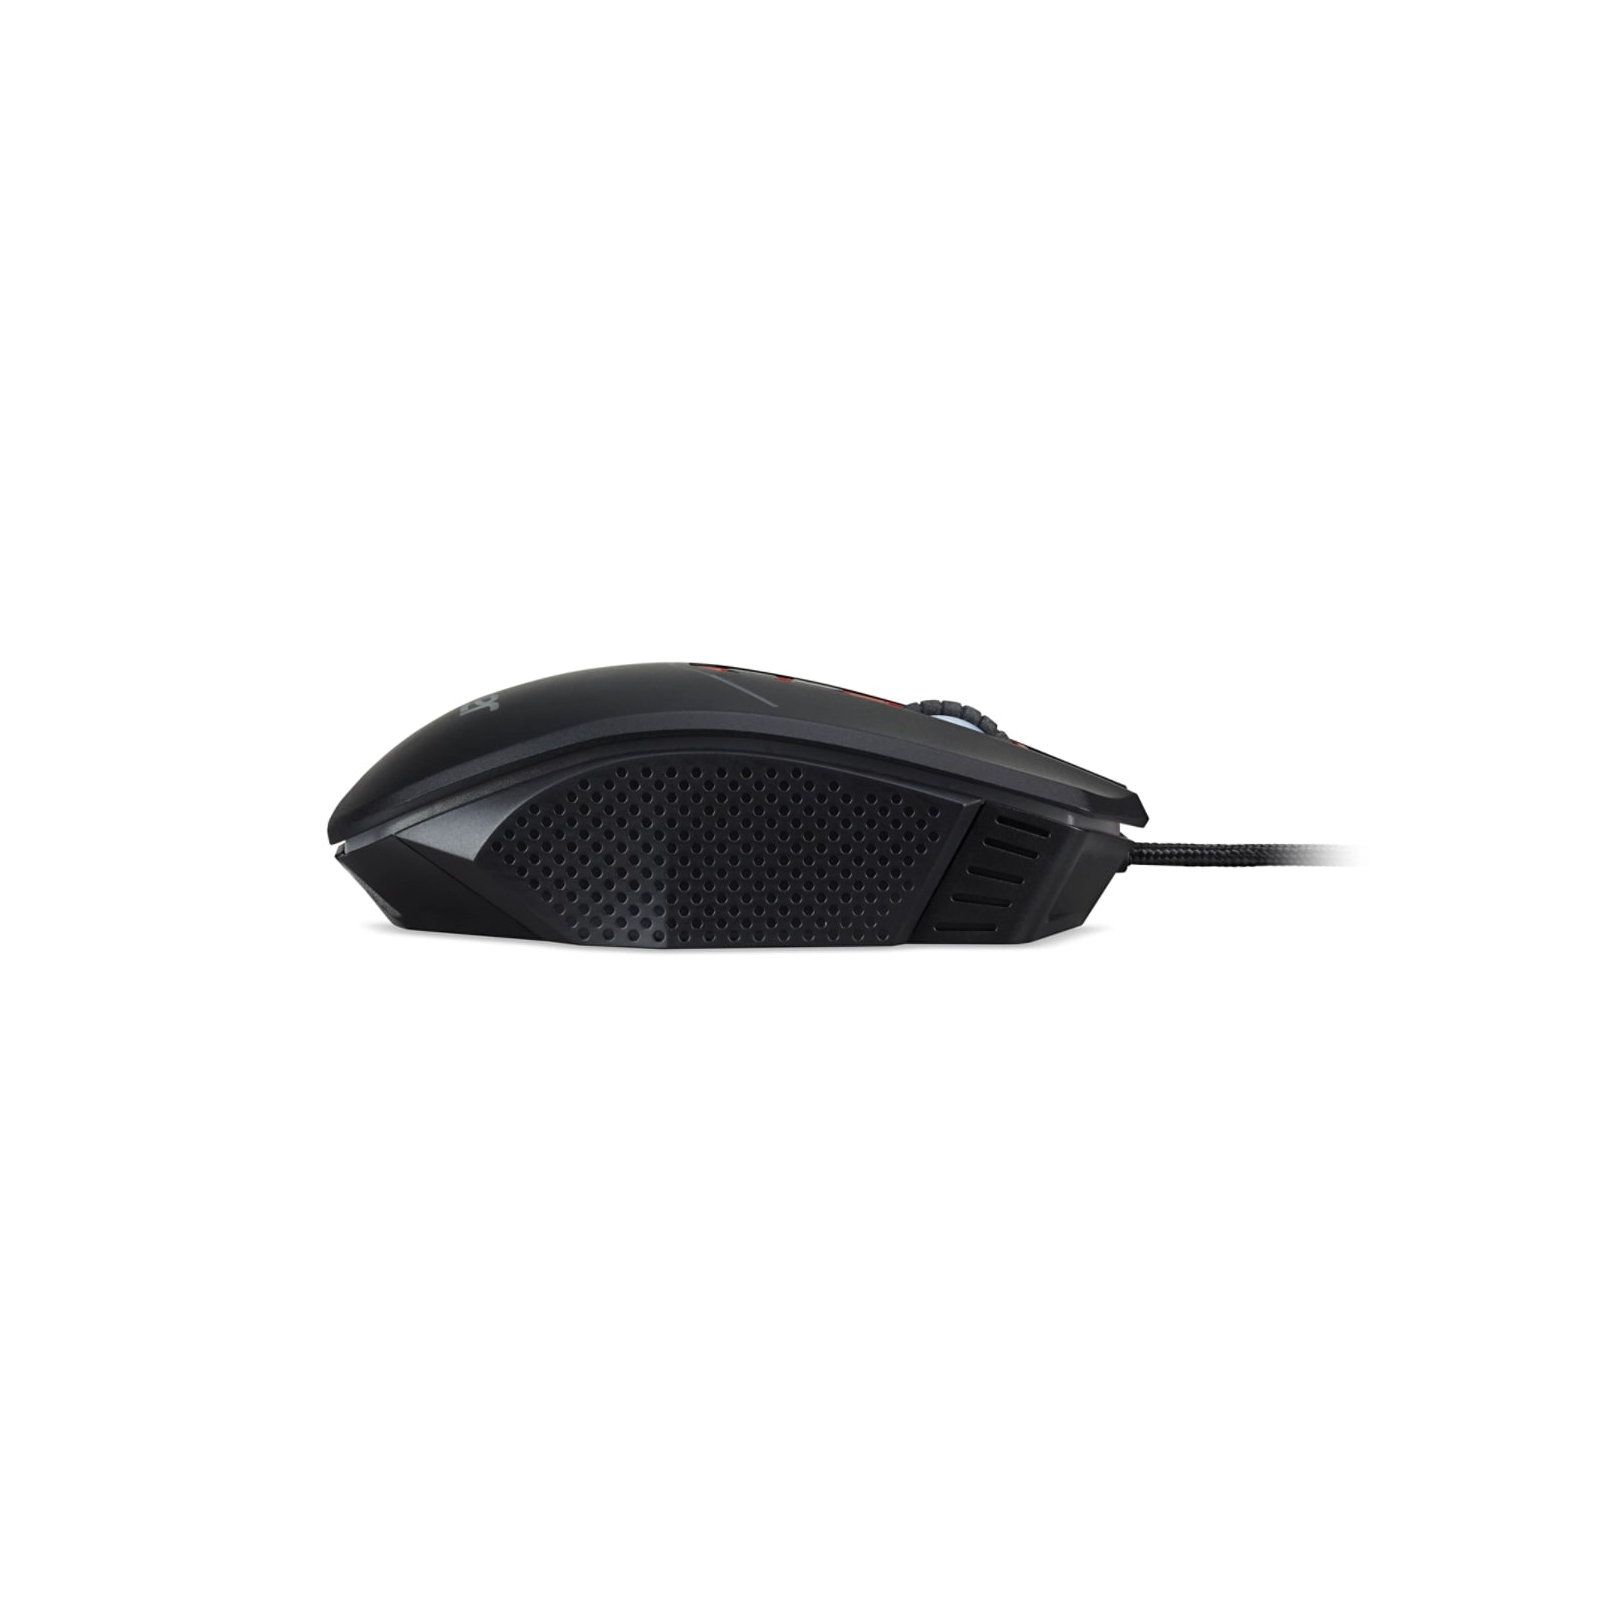 Мышка Acer NITRO NMW120 USB Black (GP.MCE11.01R) изображение 6